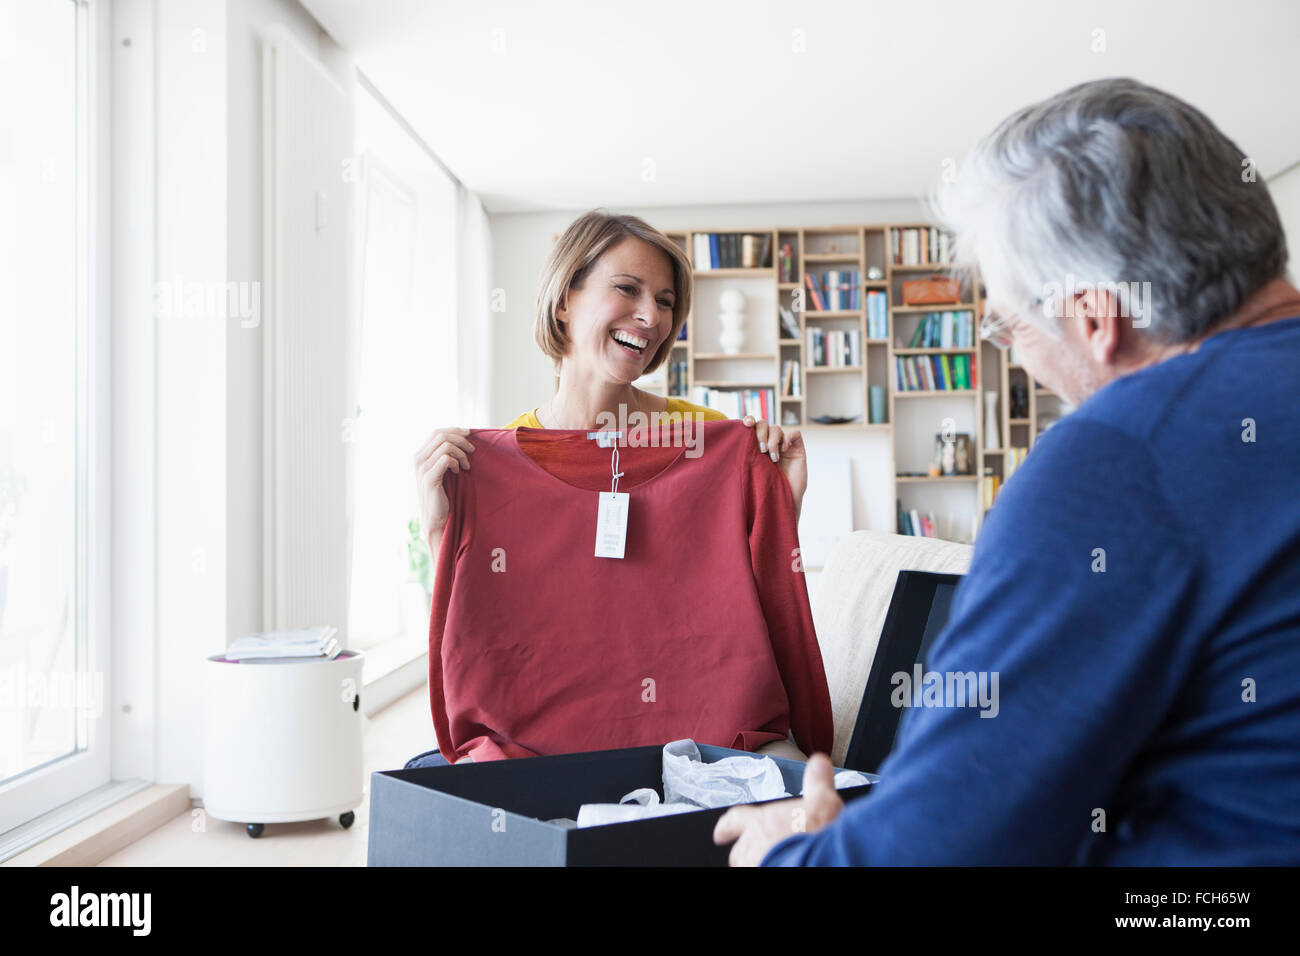 Smiling woman showing mari son nouveau pull dans le salon Banque D'Images